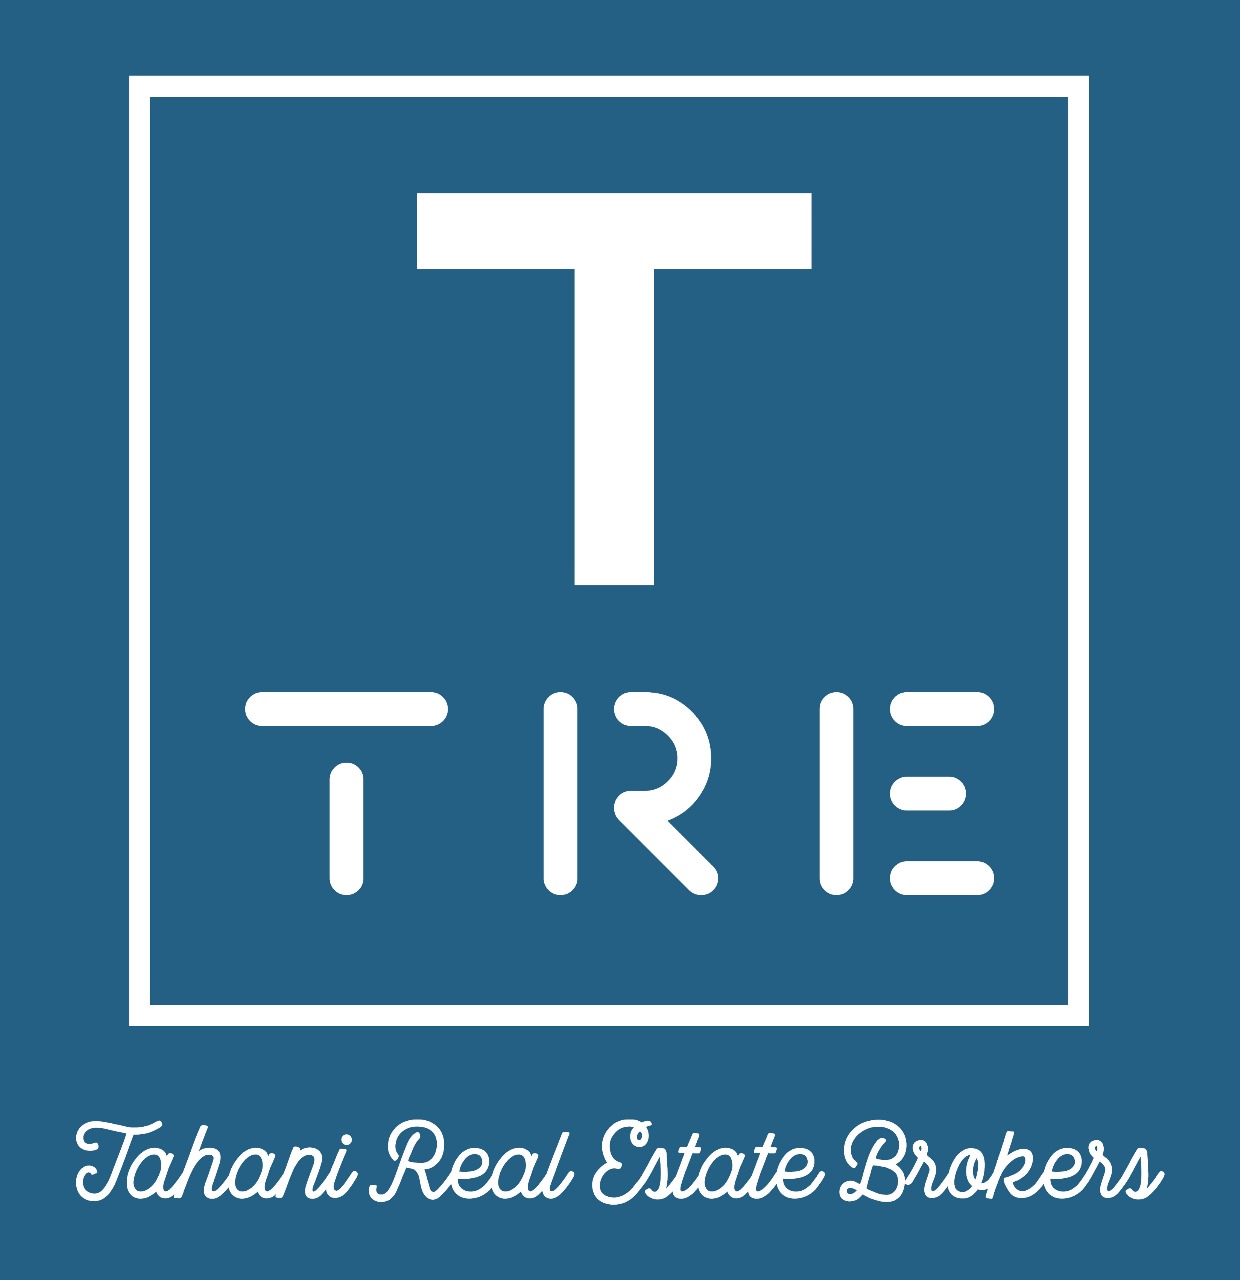 Tahani Real Estate Brokers